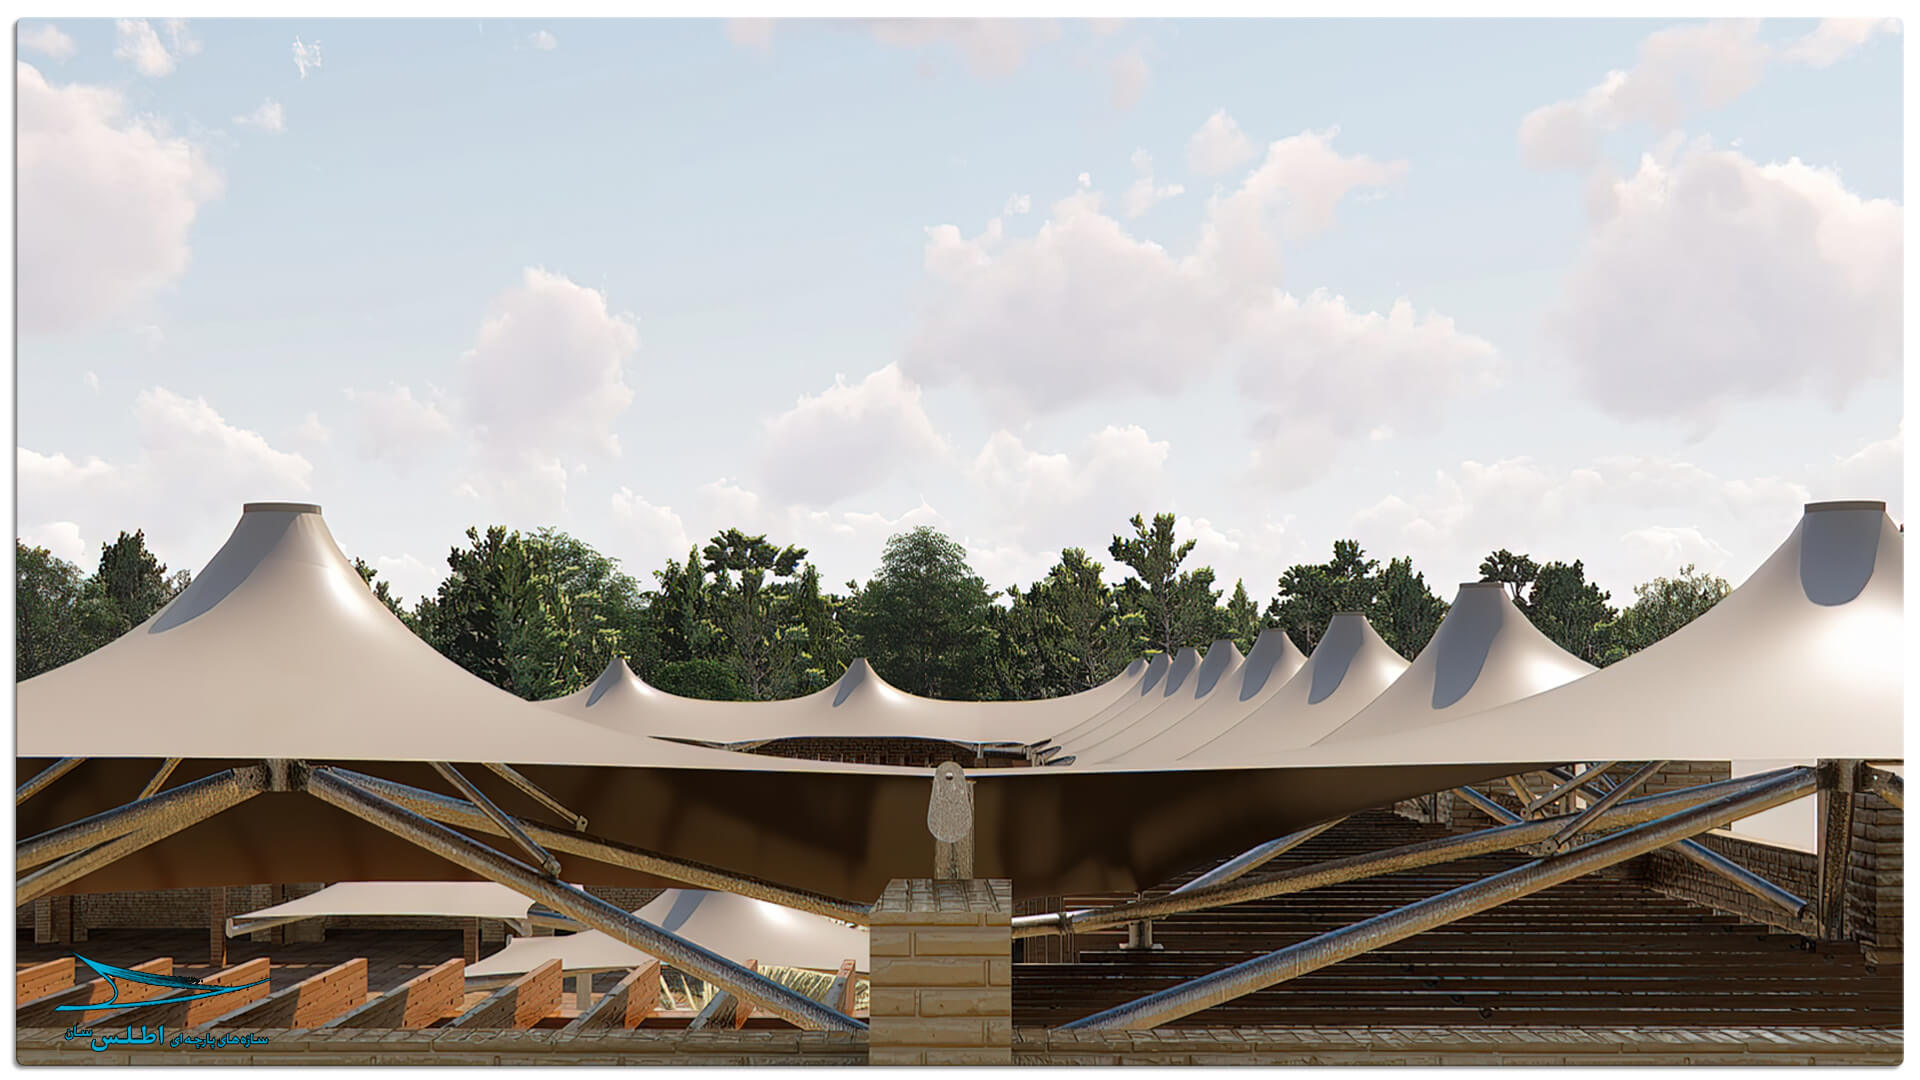 رندر پروژه سازه پارچه ای مهمانسرای گل گهر سیرجان | سازه پارچه ای اطلس سان